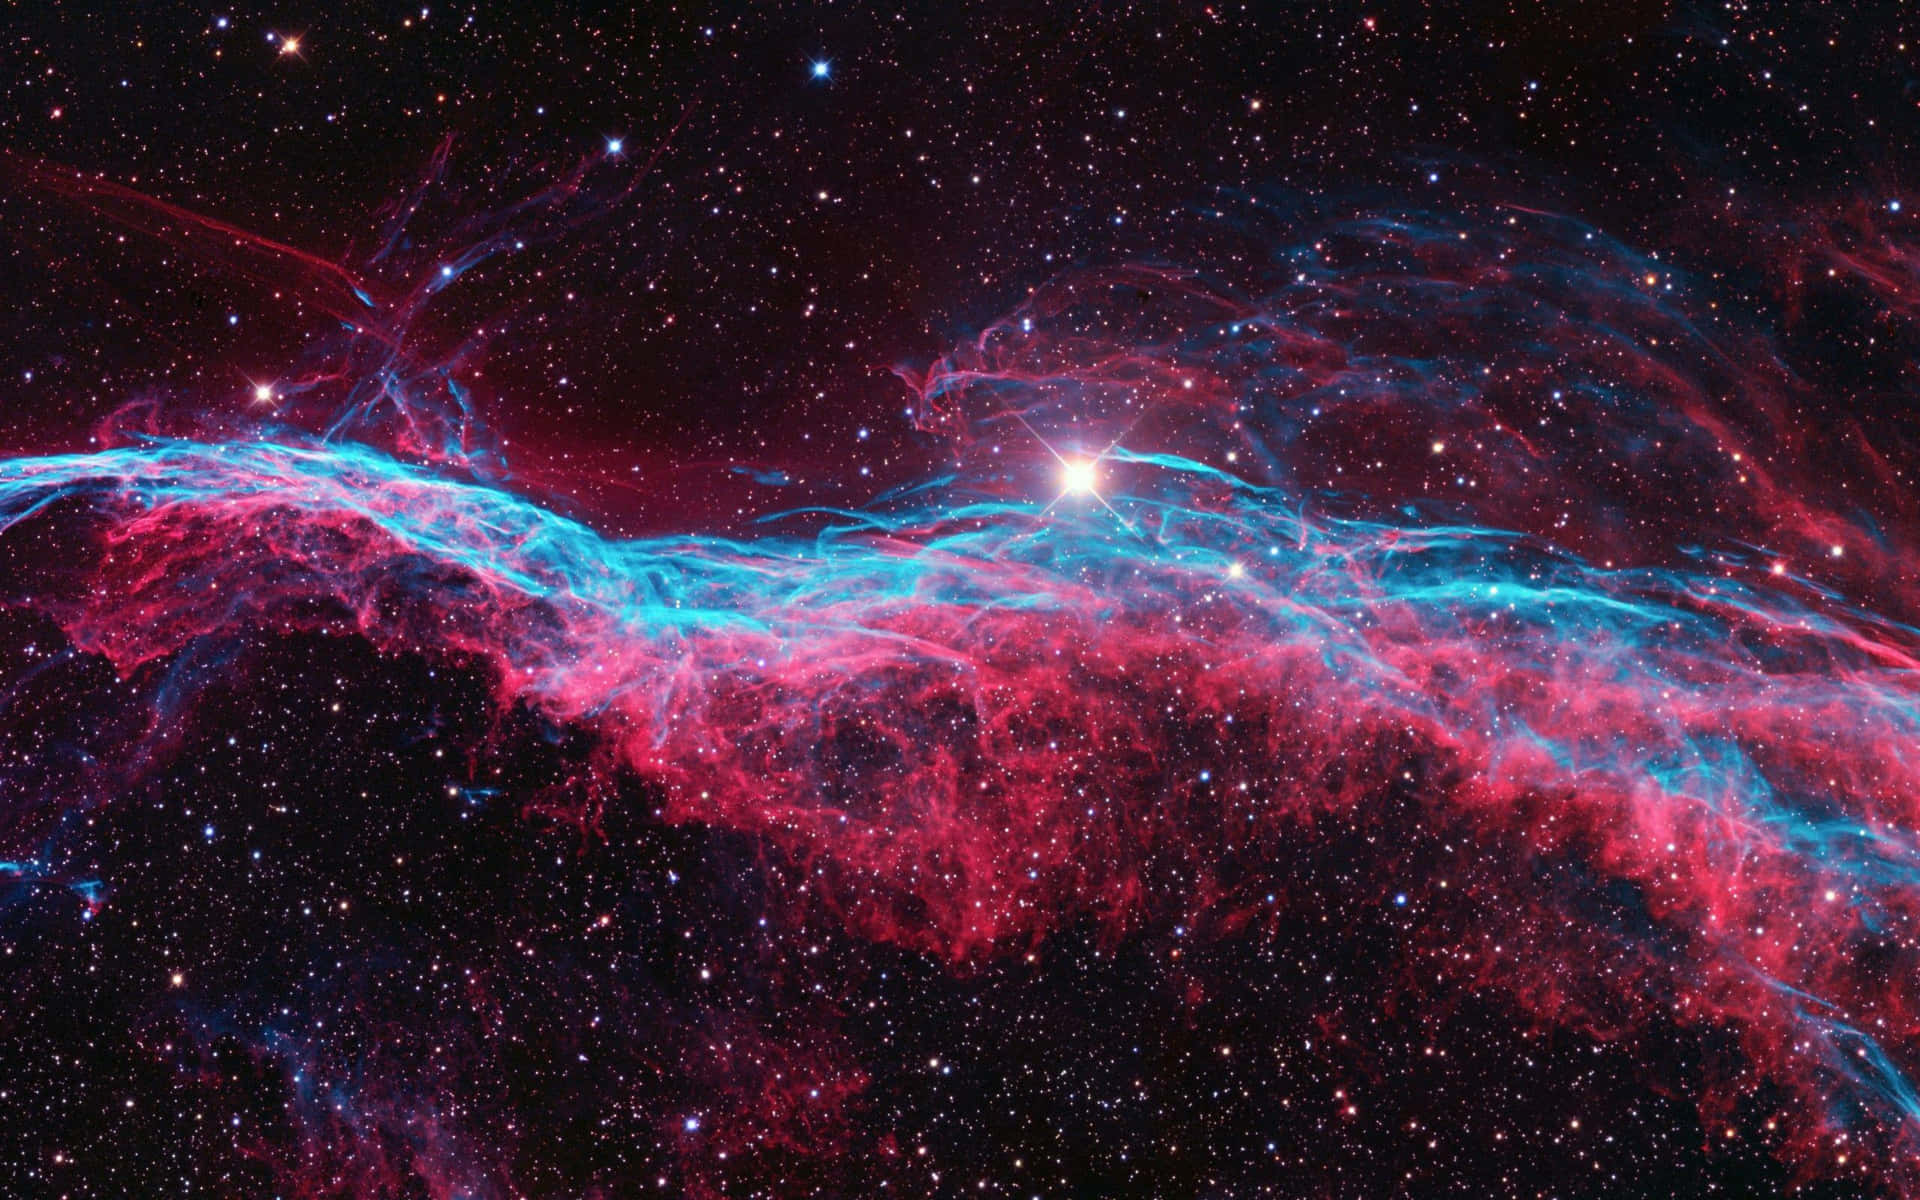 An Incredible Supernova Explosion